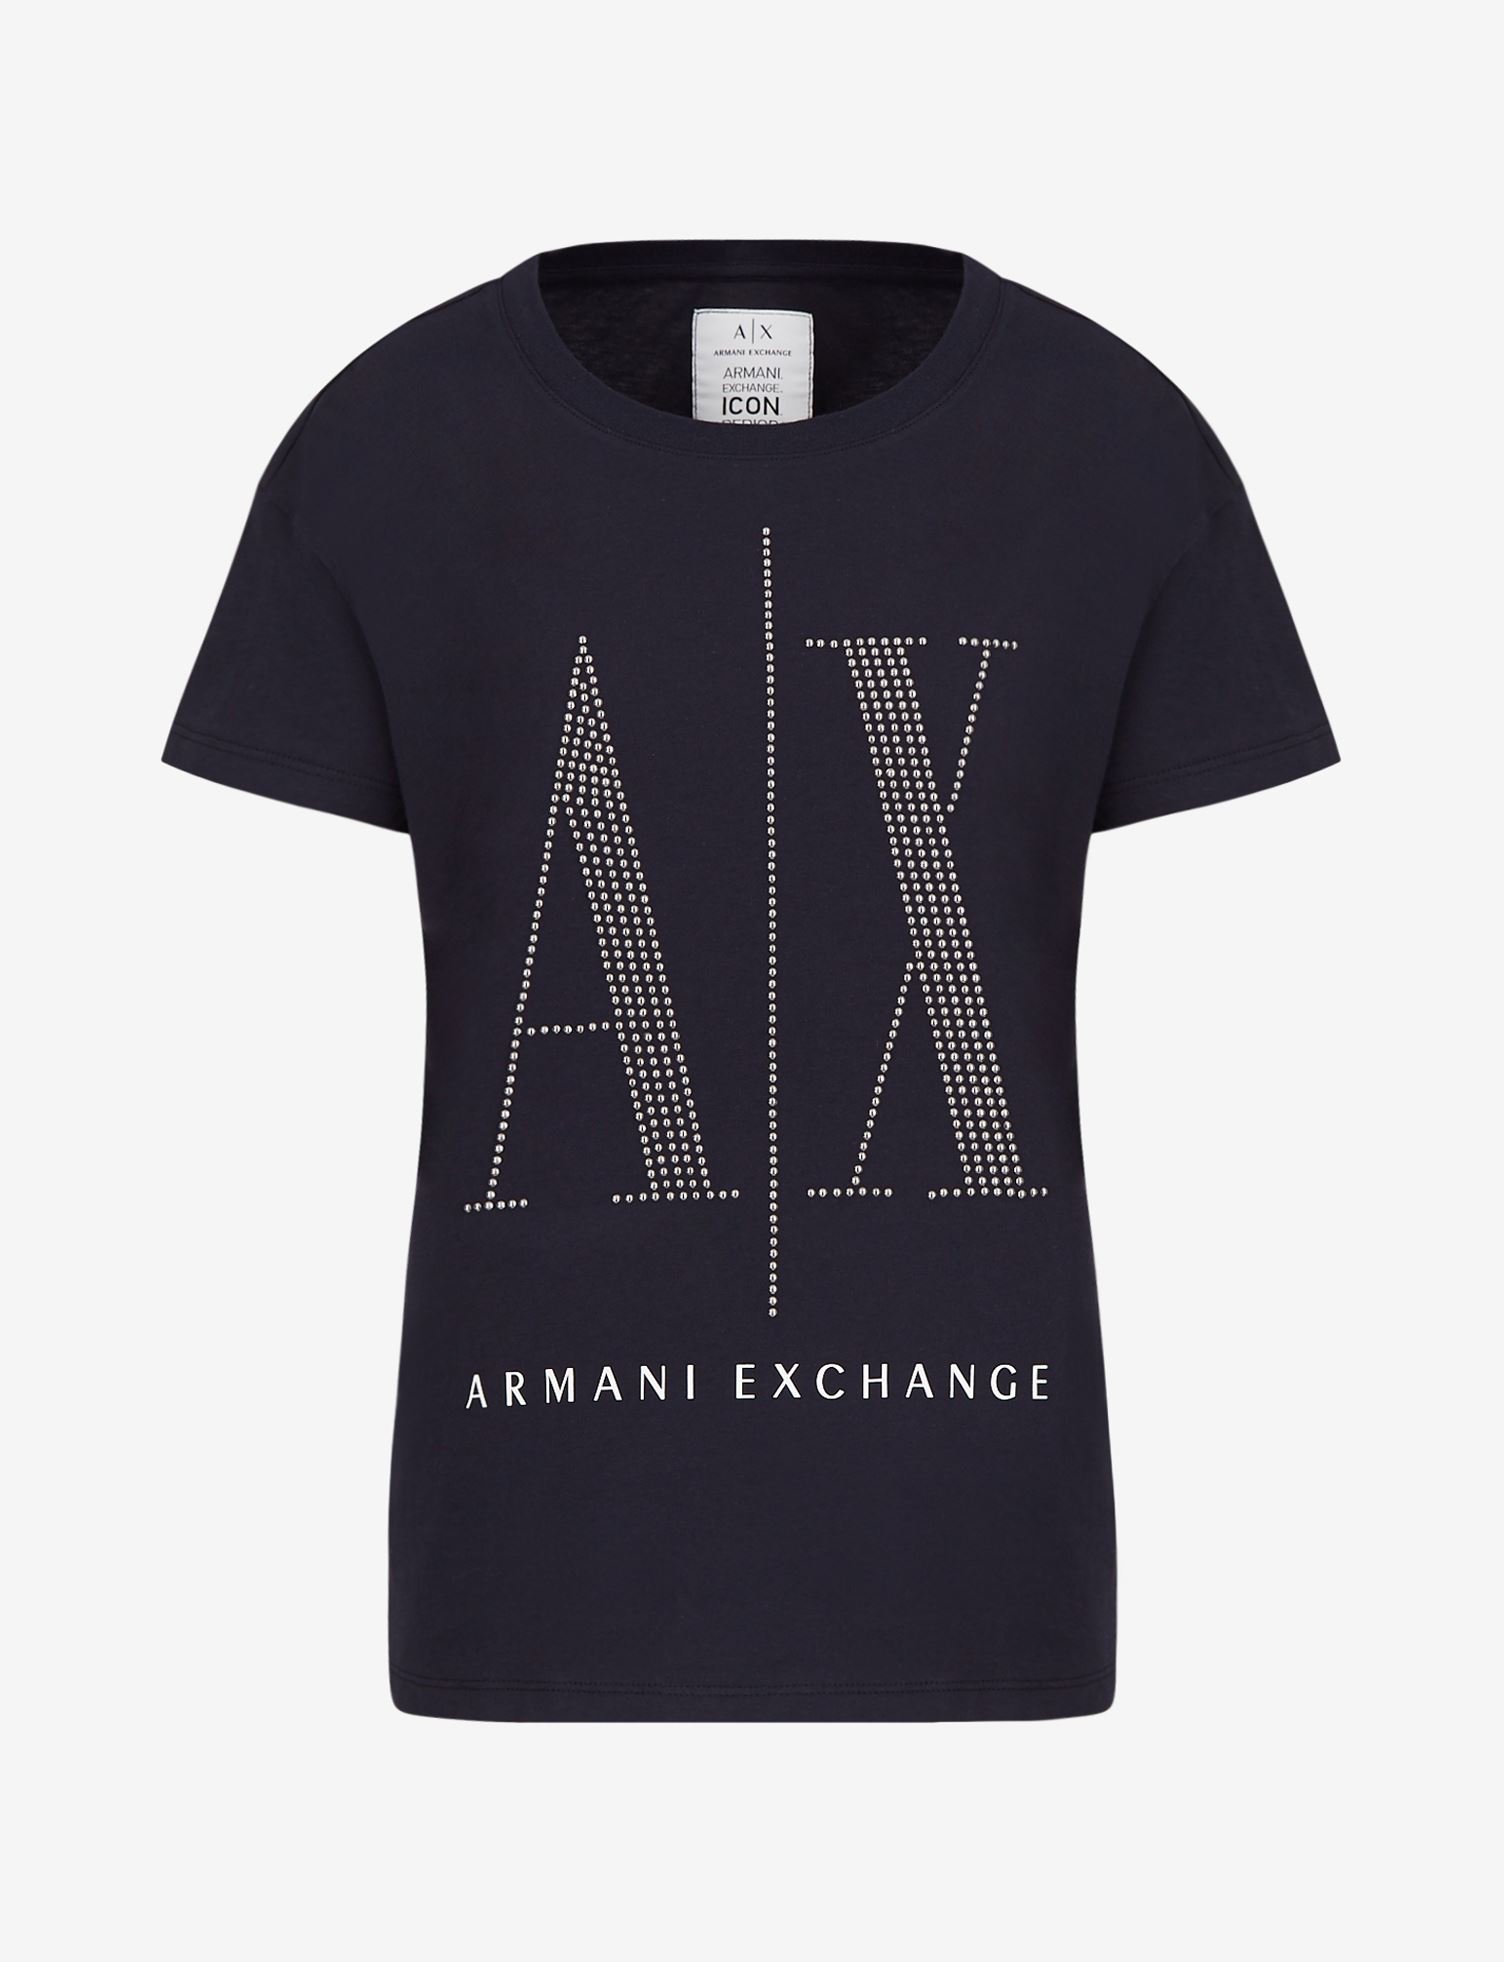 Armani Exchange_Icon Logo Regular Fit Shirt_5450_4360.jpg